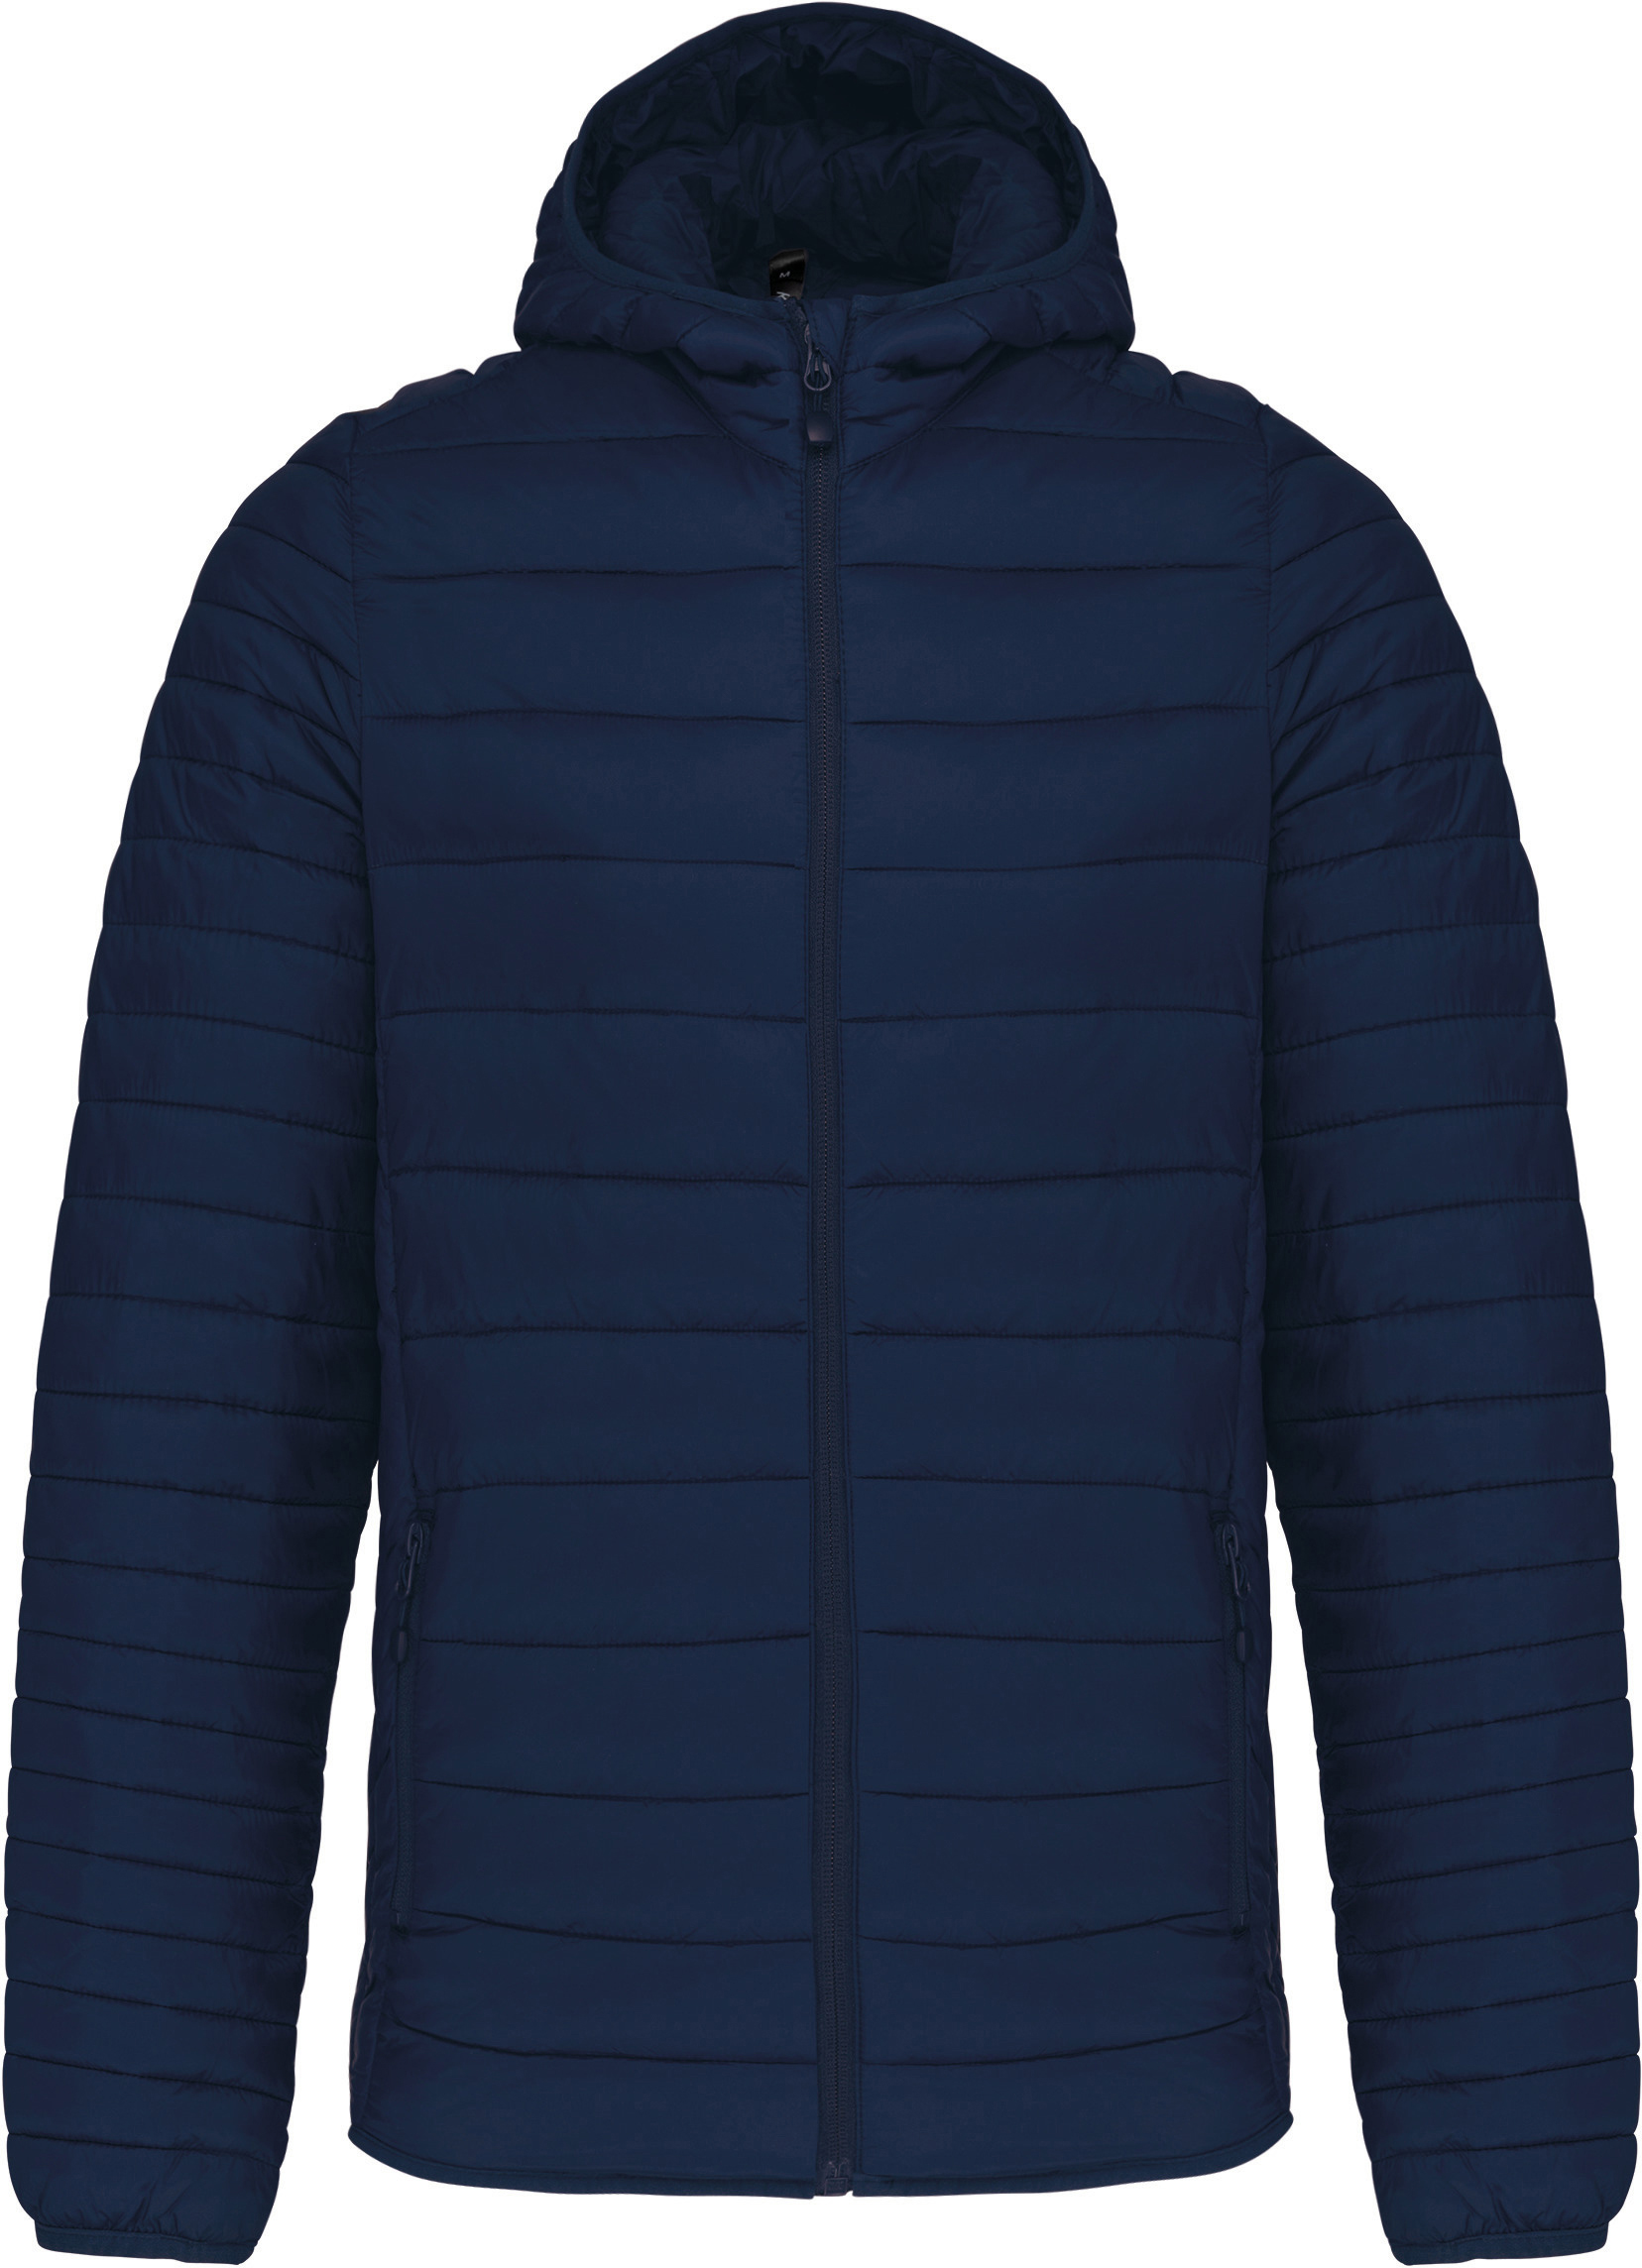 Pánská lehká zateplená bunda Down Jacket K6110 Barva: námořní modrá, Velikost: S